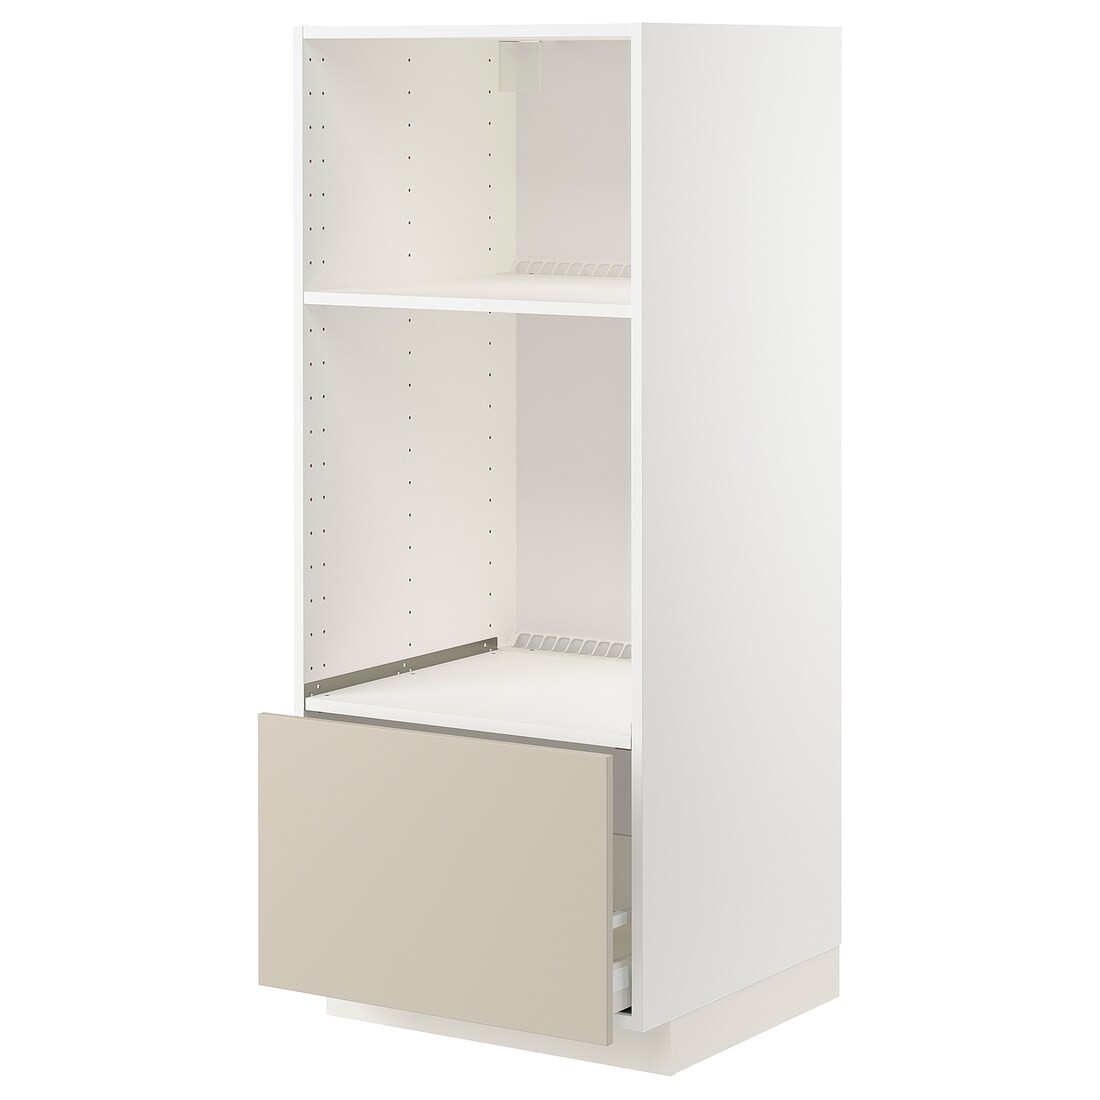 IKEA METOD МЕТОД / MAXIMERA МАКСИМЕРА Высокий шкаф для духовки / СВЧ, белый / Havstorp бежевый, 60x60x140 см 89426815 | 894.268.15